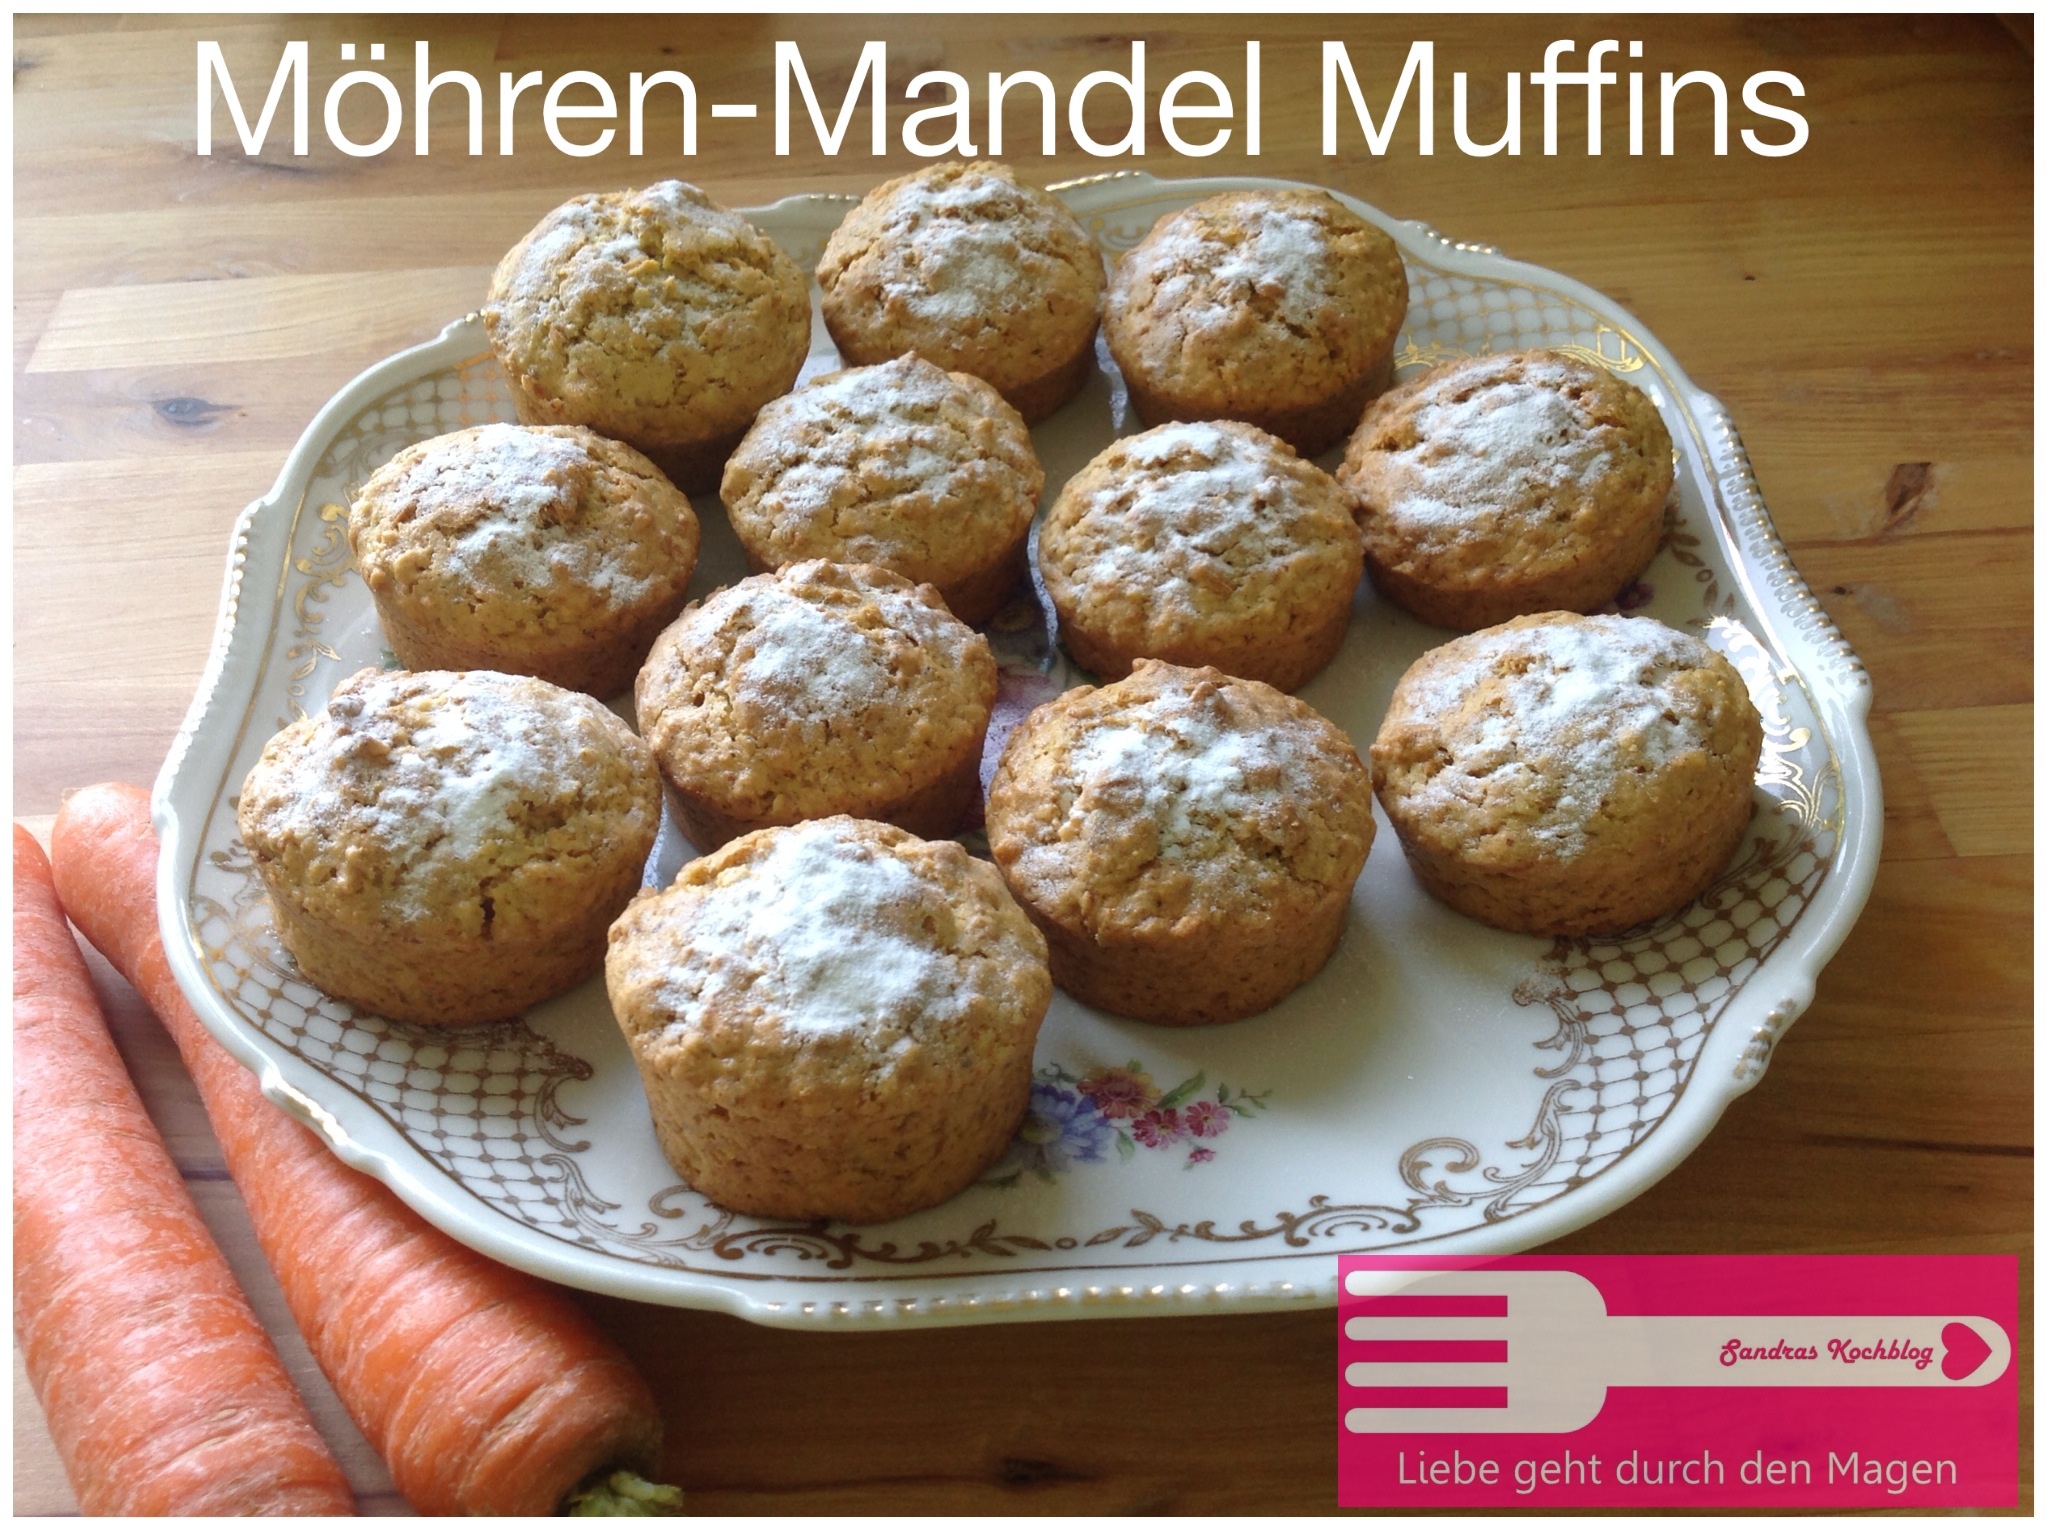 Möhren-Mandel Muffins (ohne Ei) - Sandras Kochblog